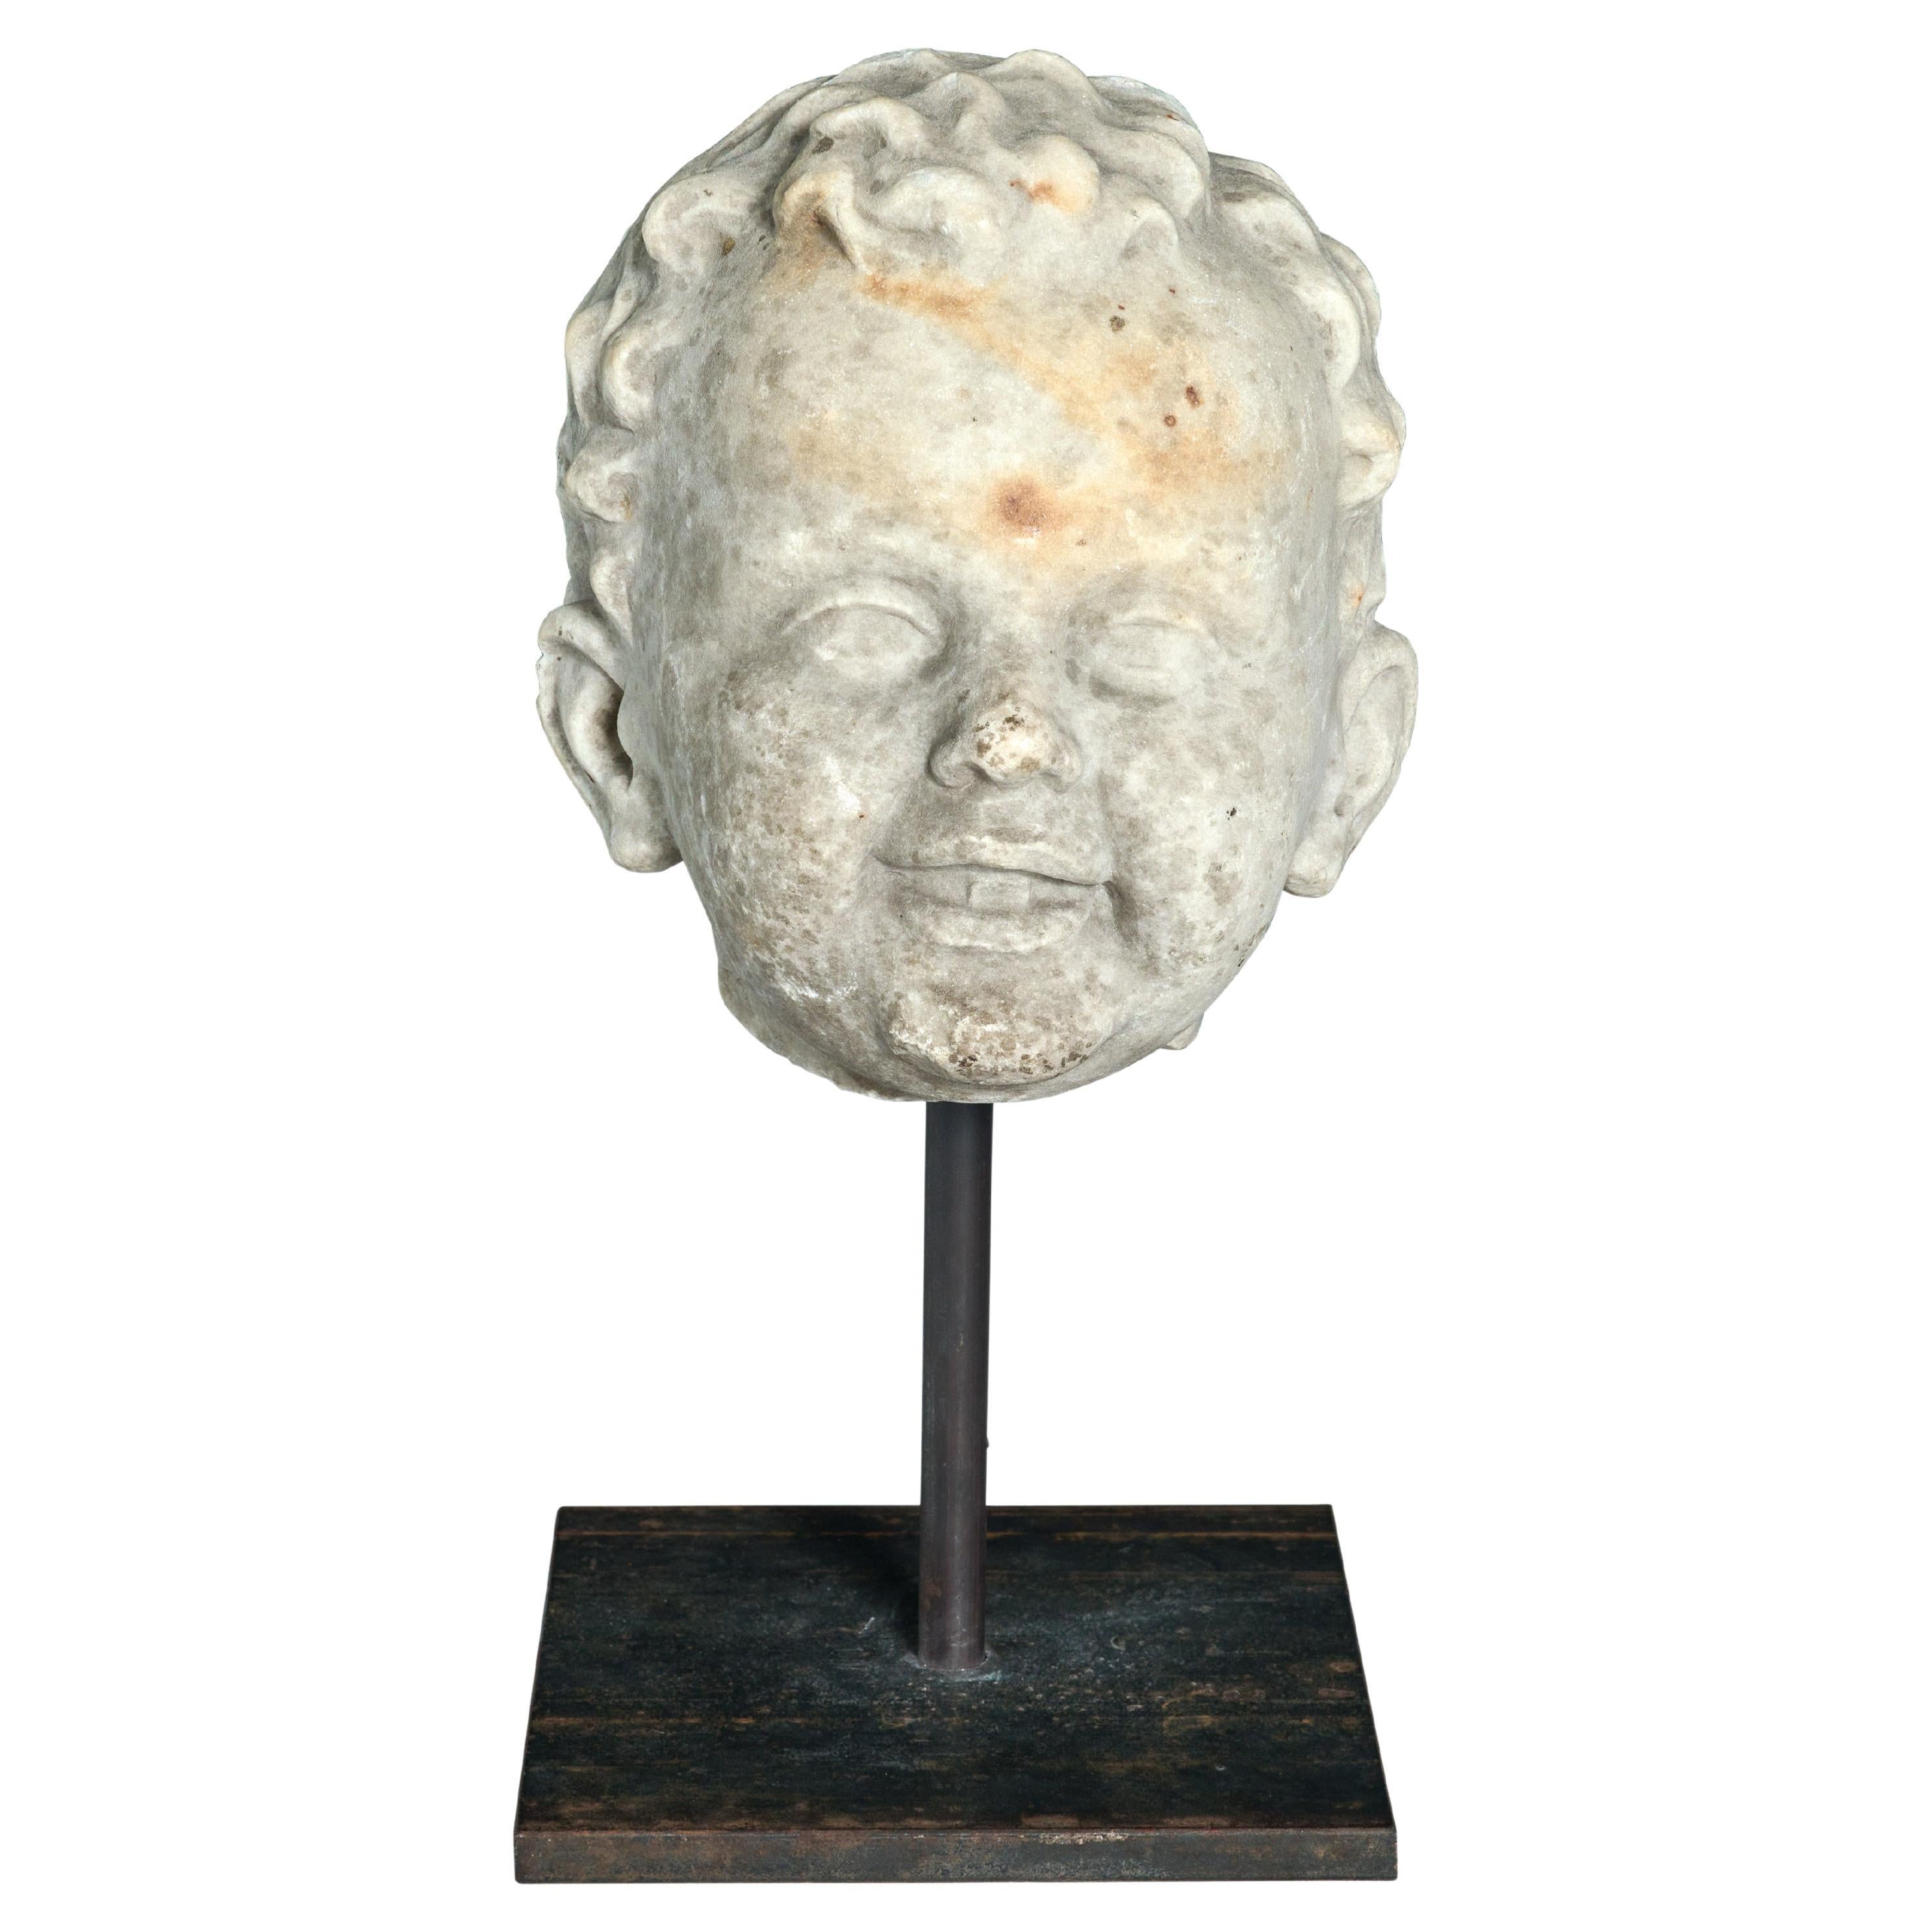 Carrara-Marmor-Statue Fragment eines glücklichen jungen Mannes